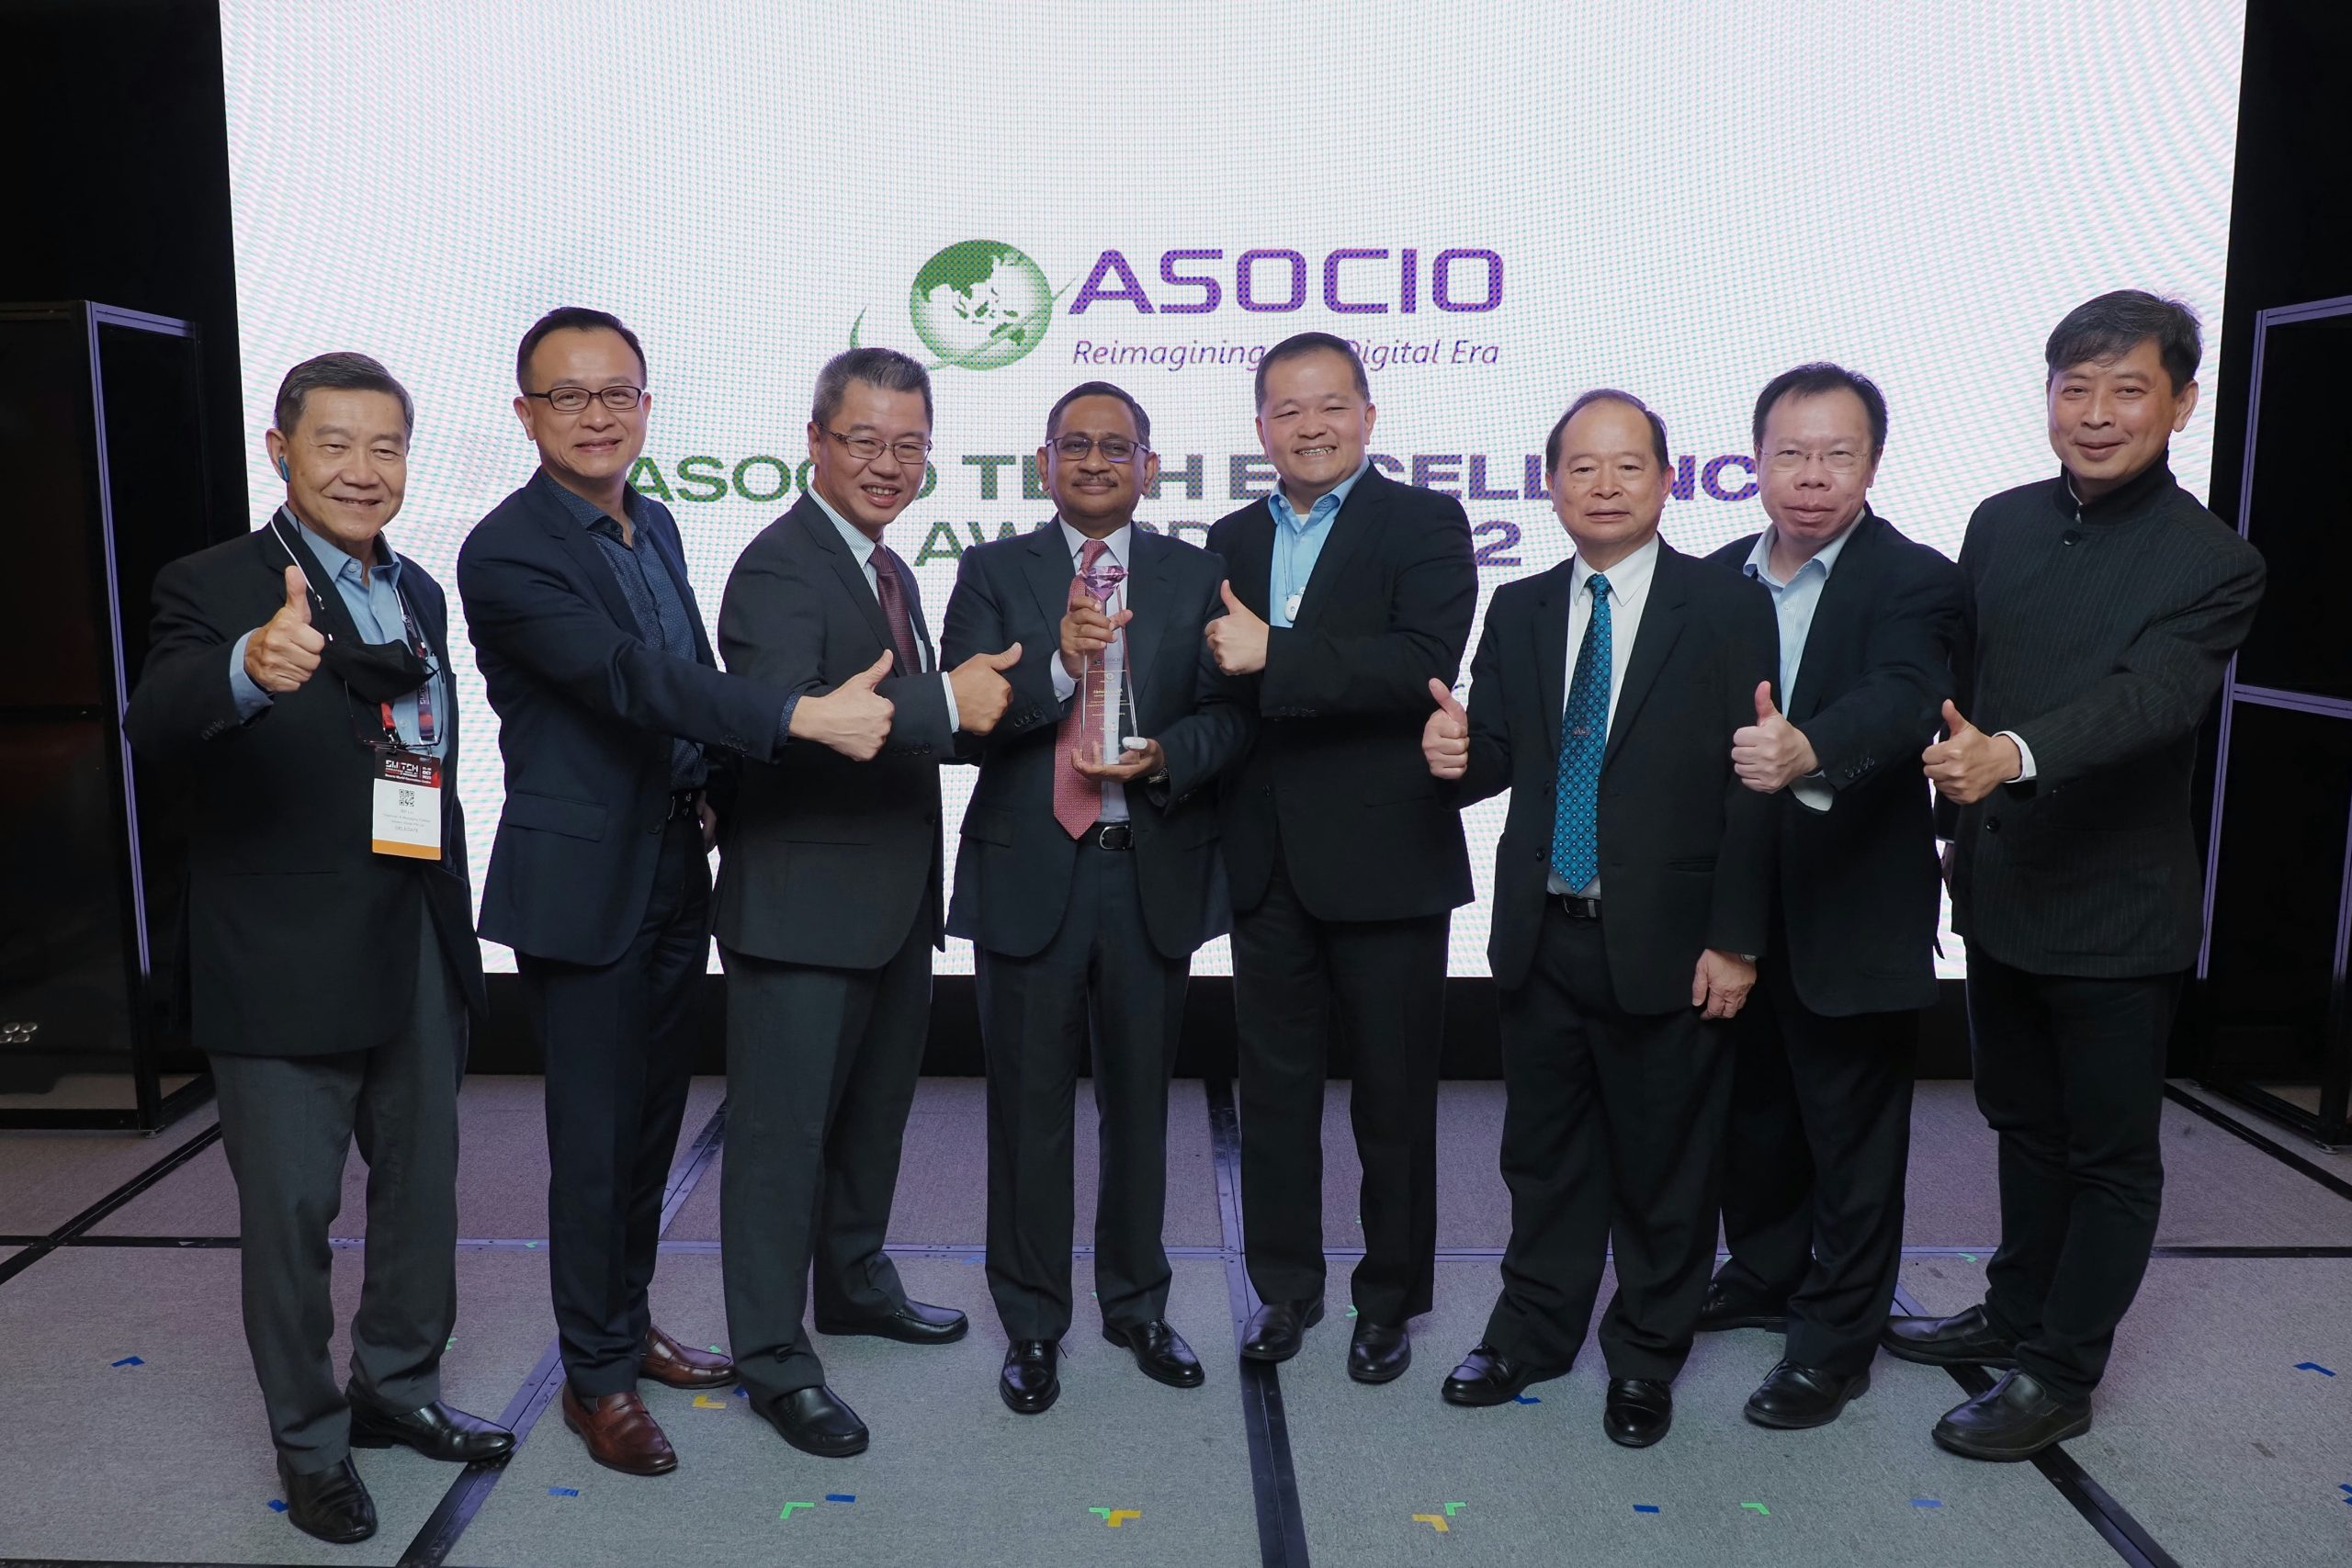 BCS former president Mr. Kafi becomes lifetime chairman of ASOCIO